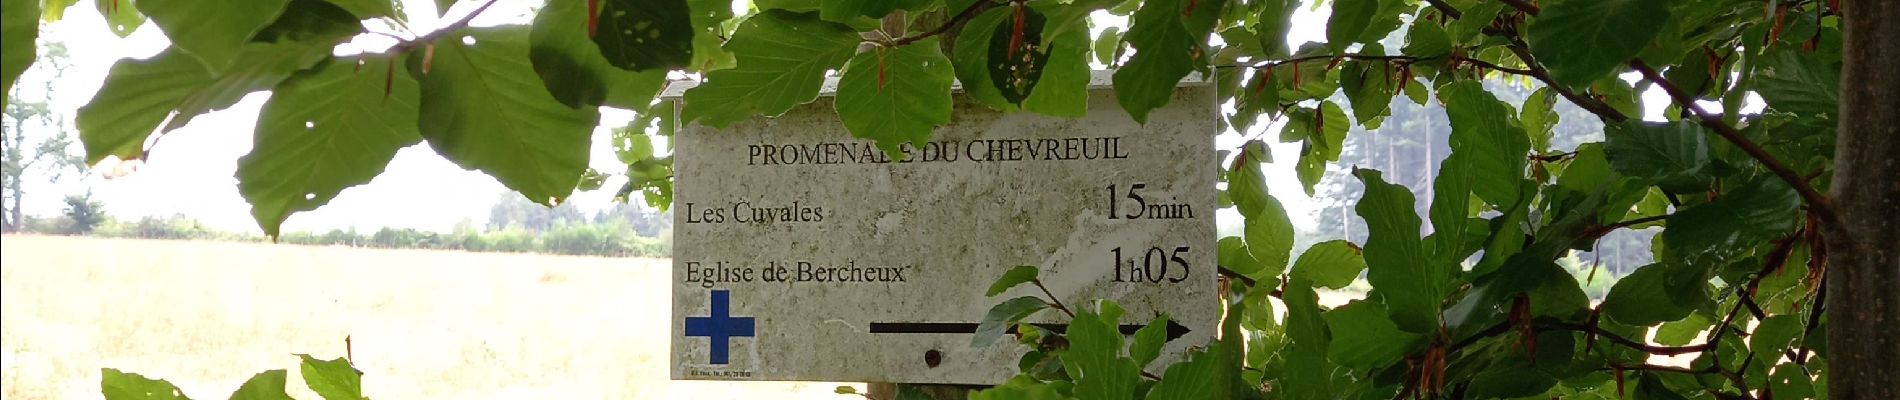 Trail Walking Vaux-sur-Sûre - Adeps 10 km Bercheux - Photo